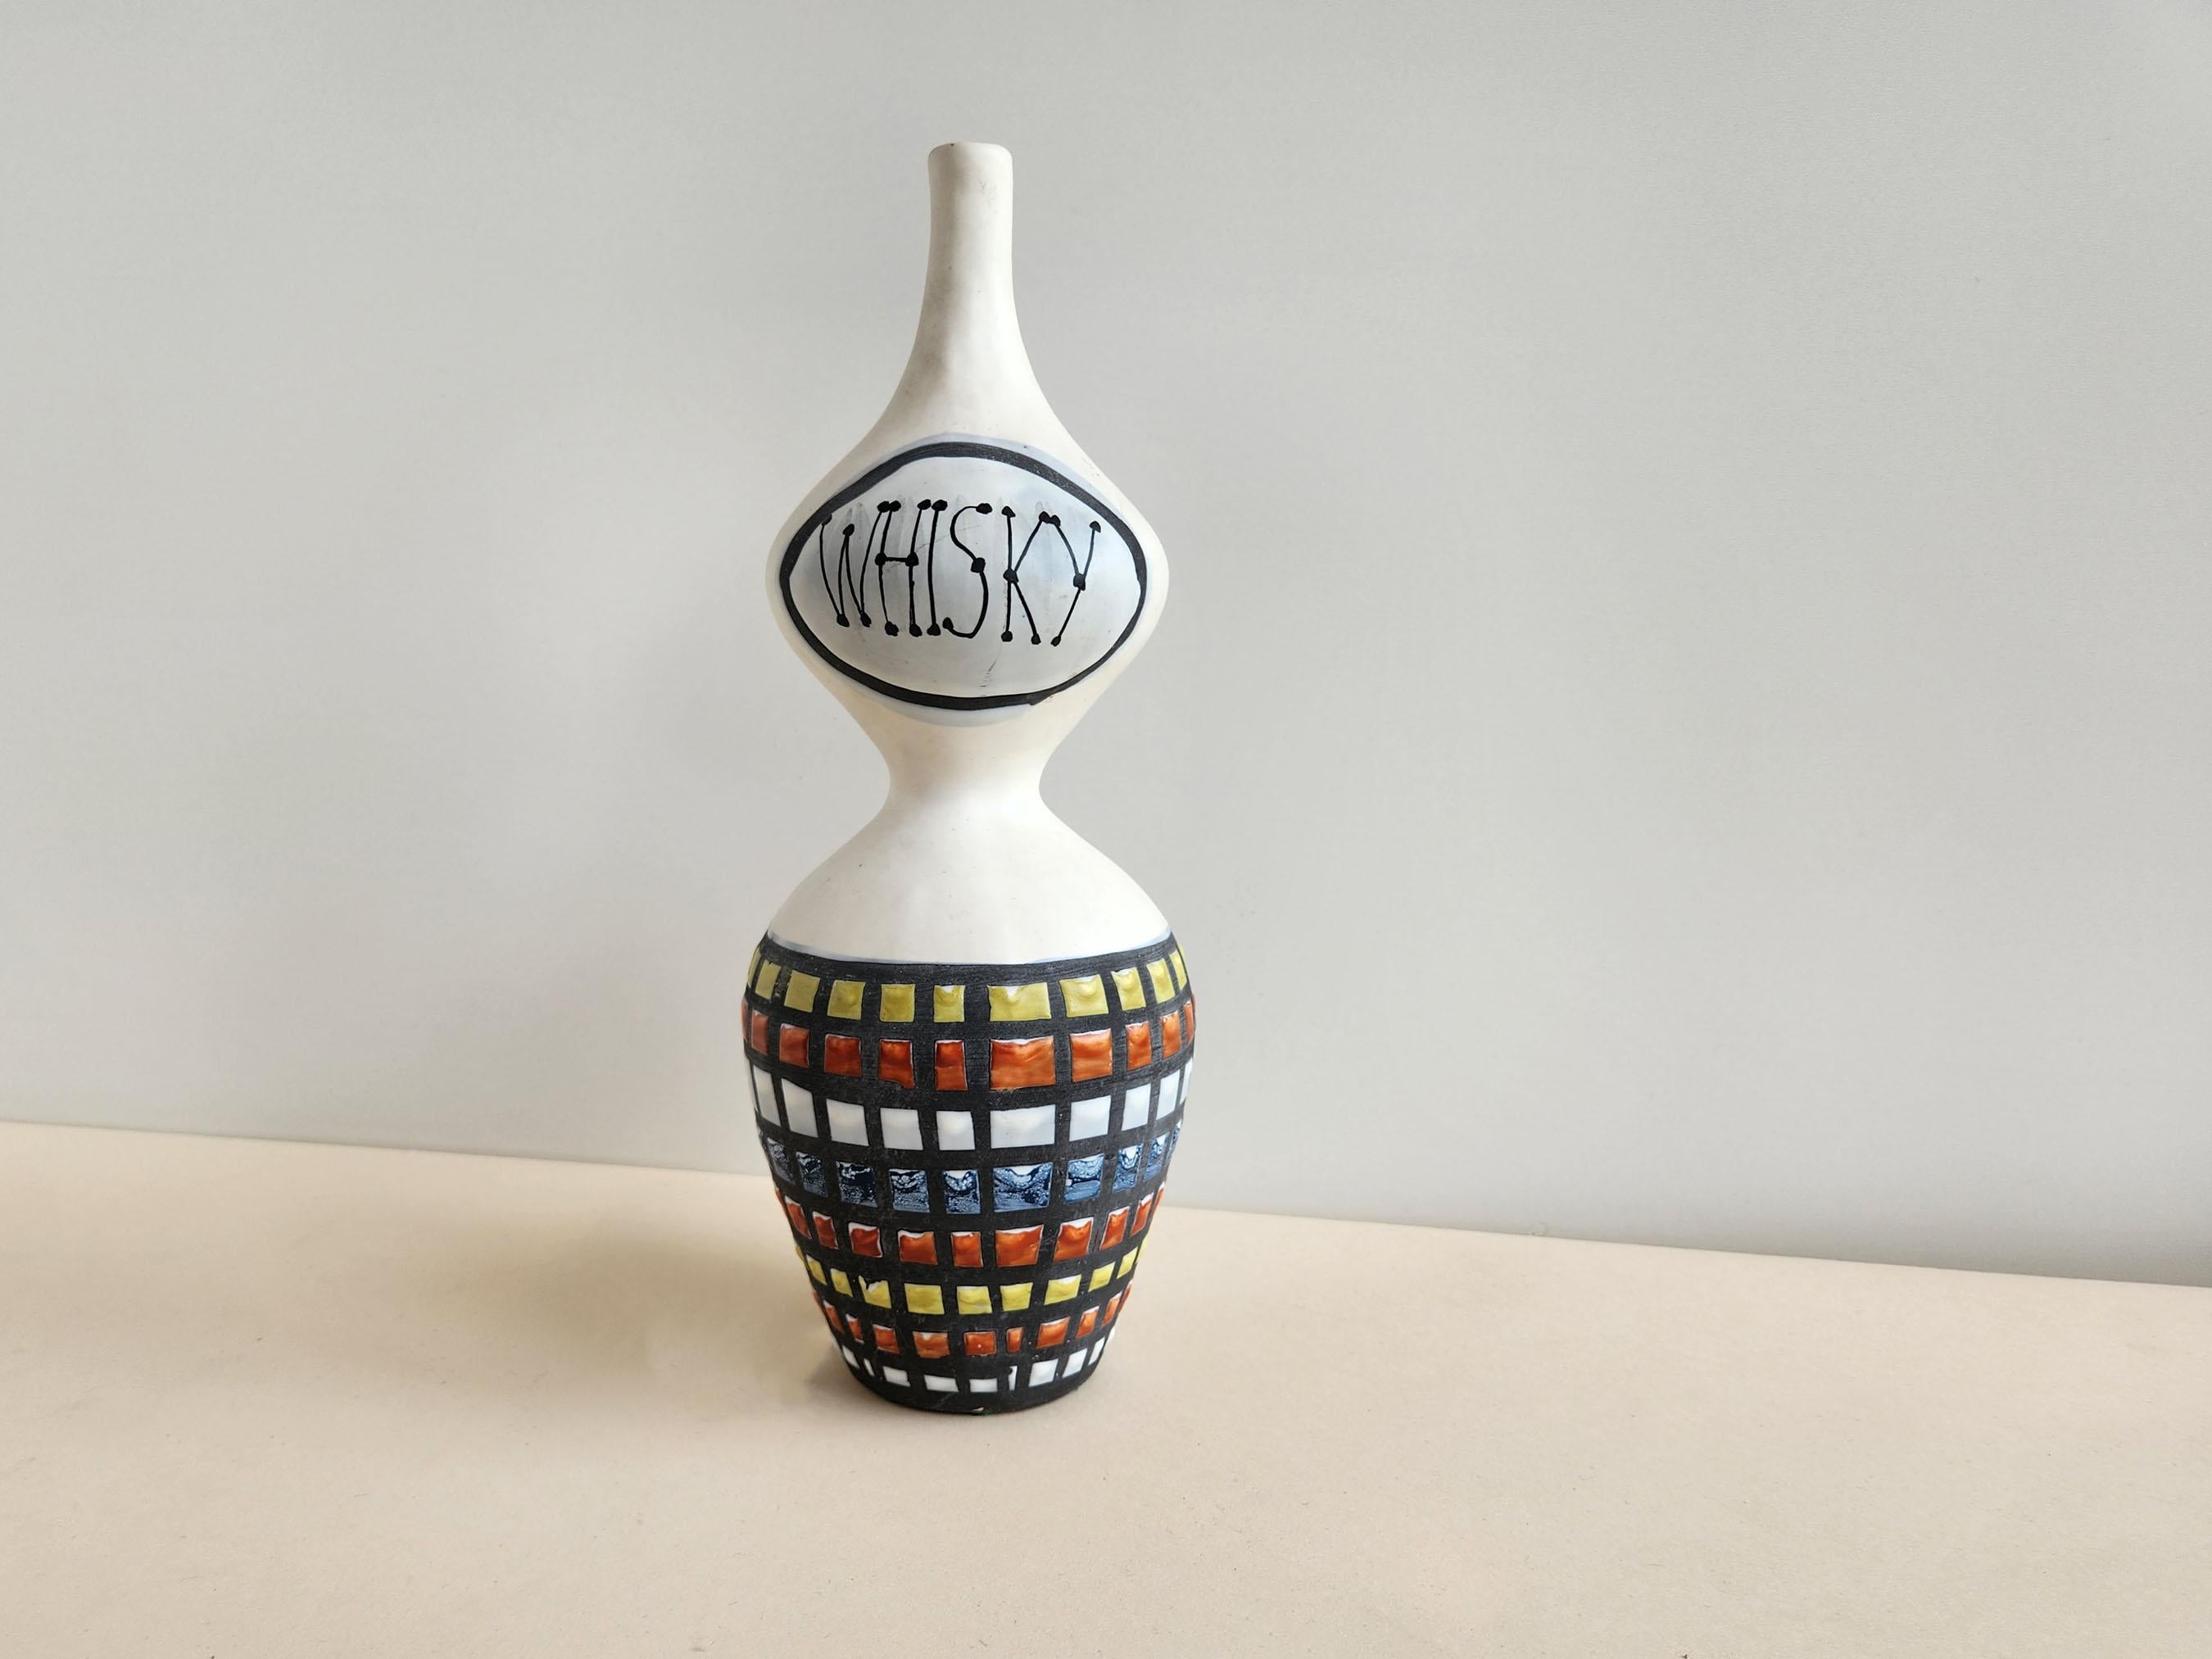 Vintage Keramik dekorative Kolben unterzeichnet von Roger Capron - Vallauris, Frankreich

Roger Capron war ein einflussreicher französischer Keramiker, der für seine Kacheltische und die Verwendung wiederkehrender Motive wie stilisierte Zweige und